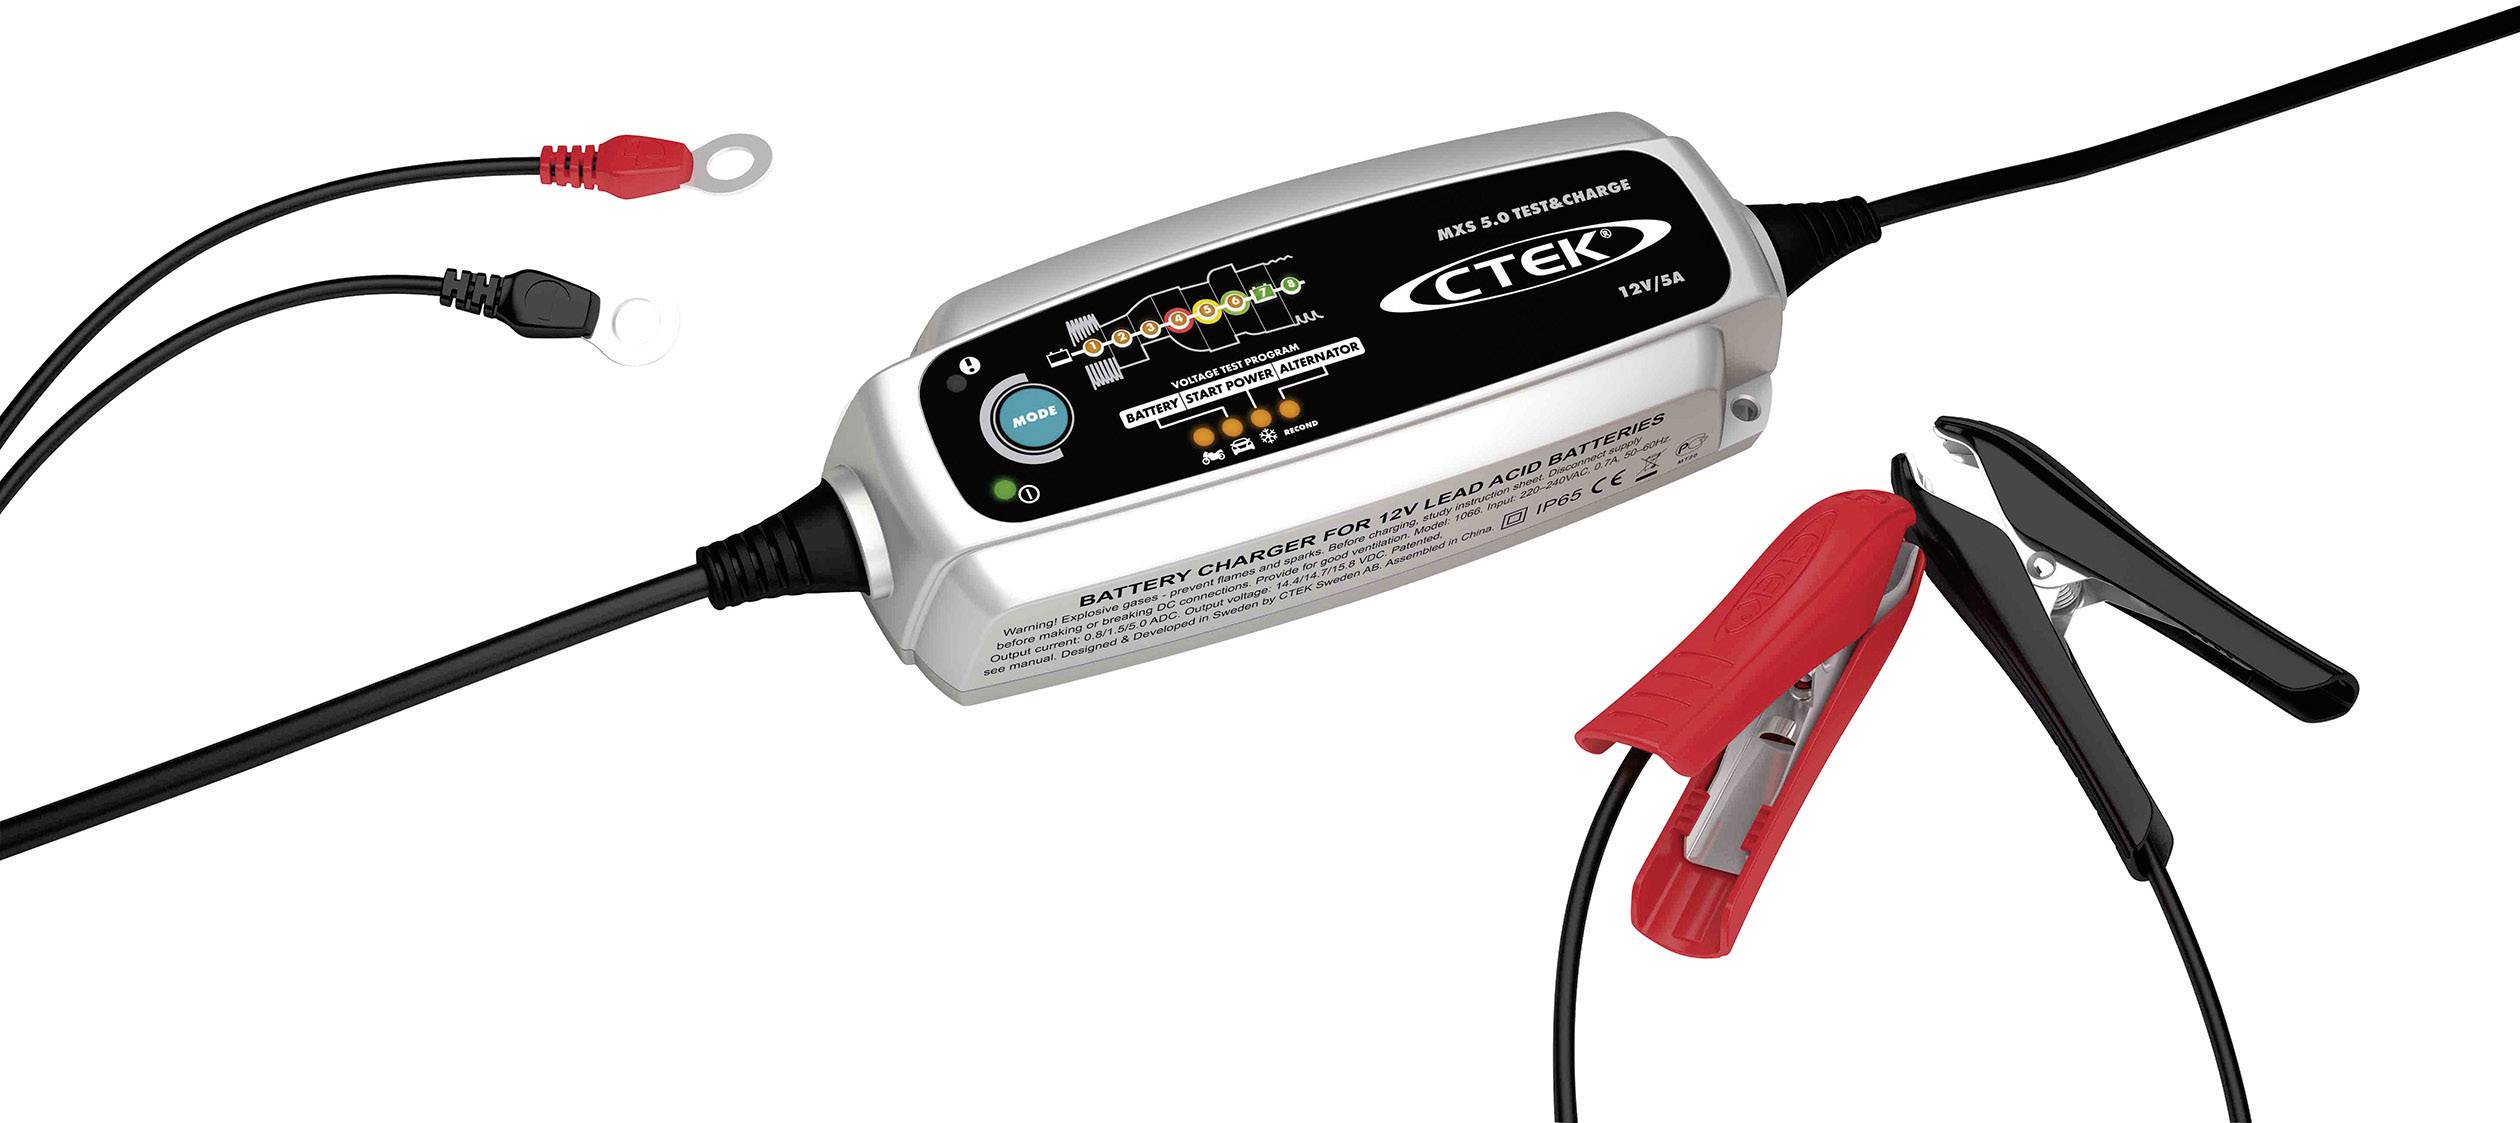 Niet essentieel Te effect CTEK Druppellader MXS 5.0 Test & Charge 12 V 5 A kopen ? Conrad Electronic